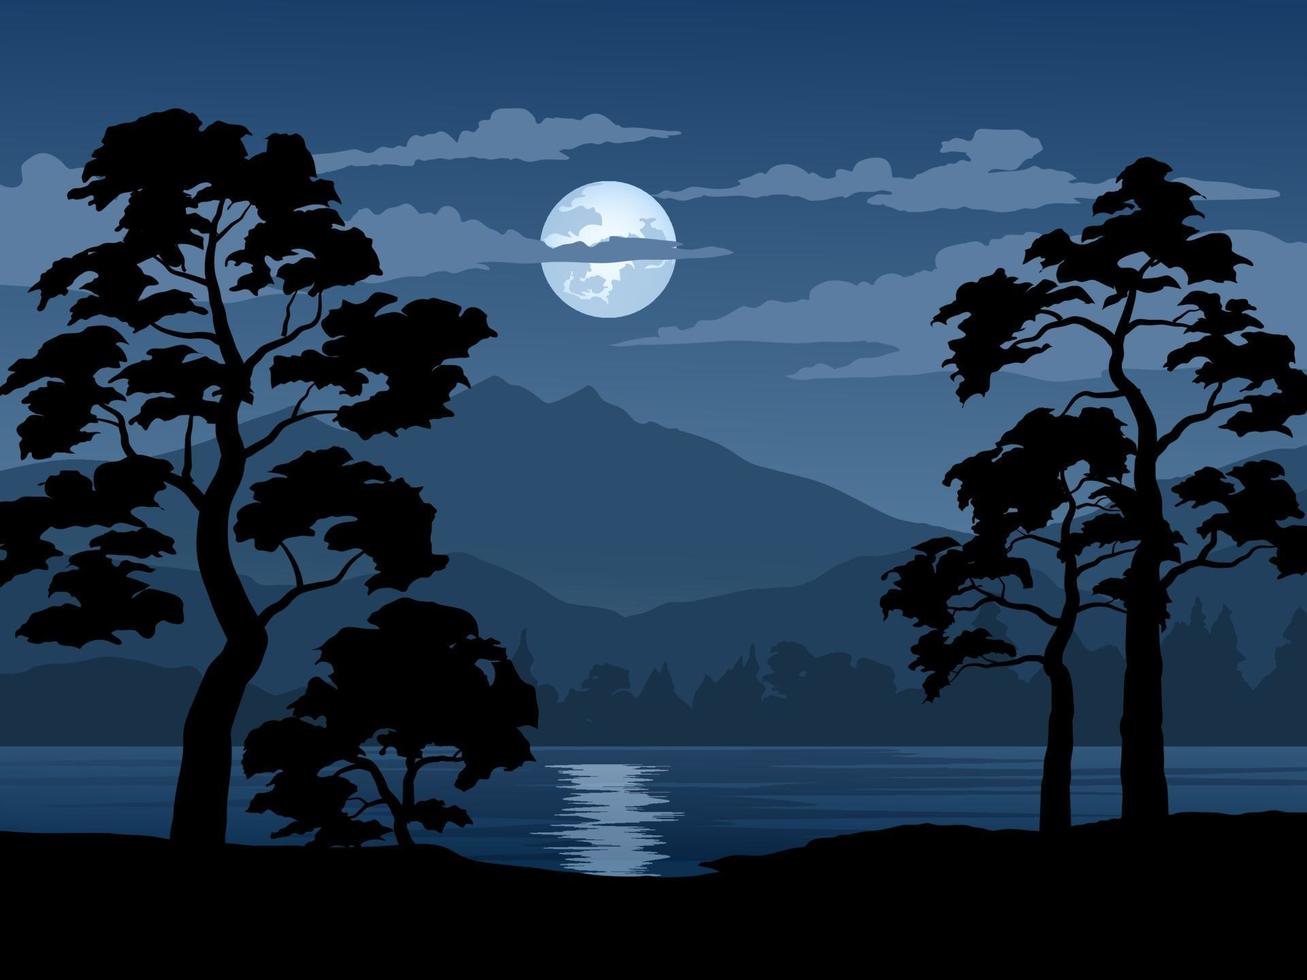 Forest Night Landscape Illustration vector